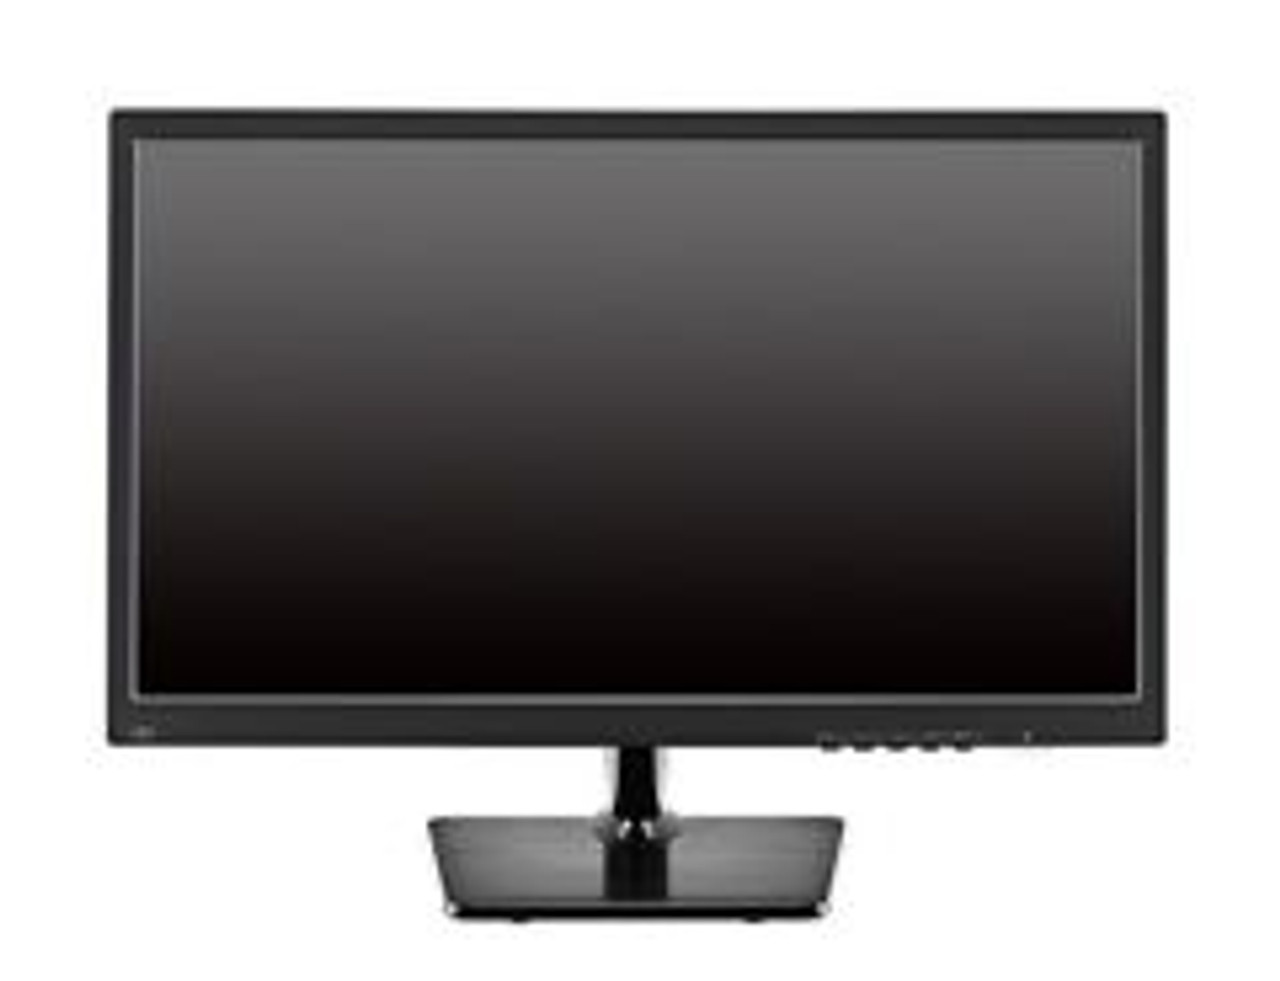 711987-001 | HP | E231-la2307x 21.5-inch LED Backlit LCD Monitor